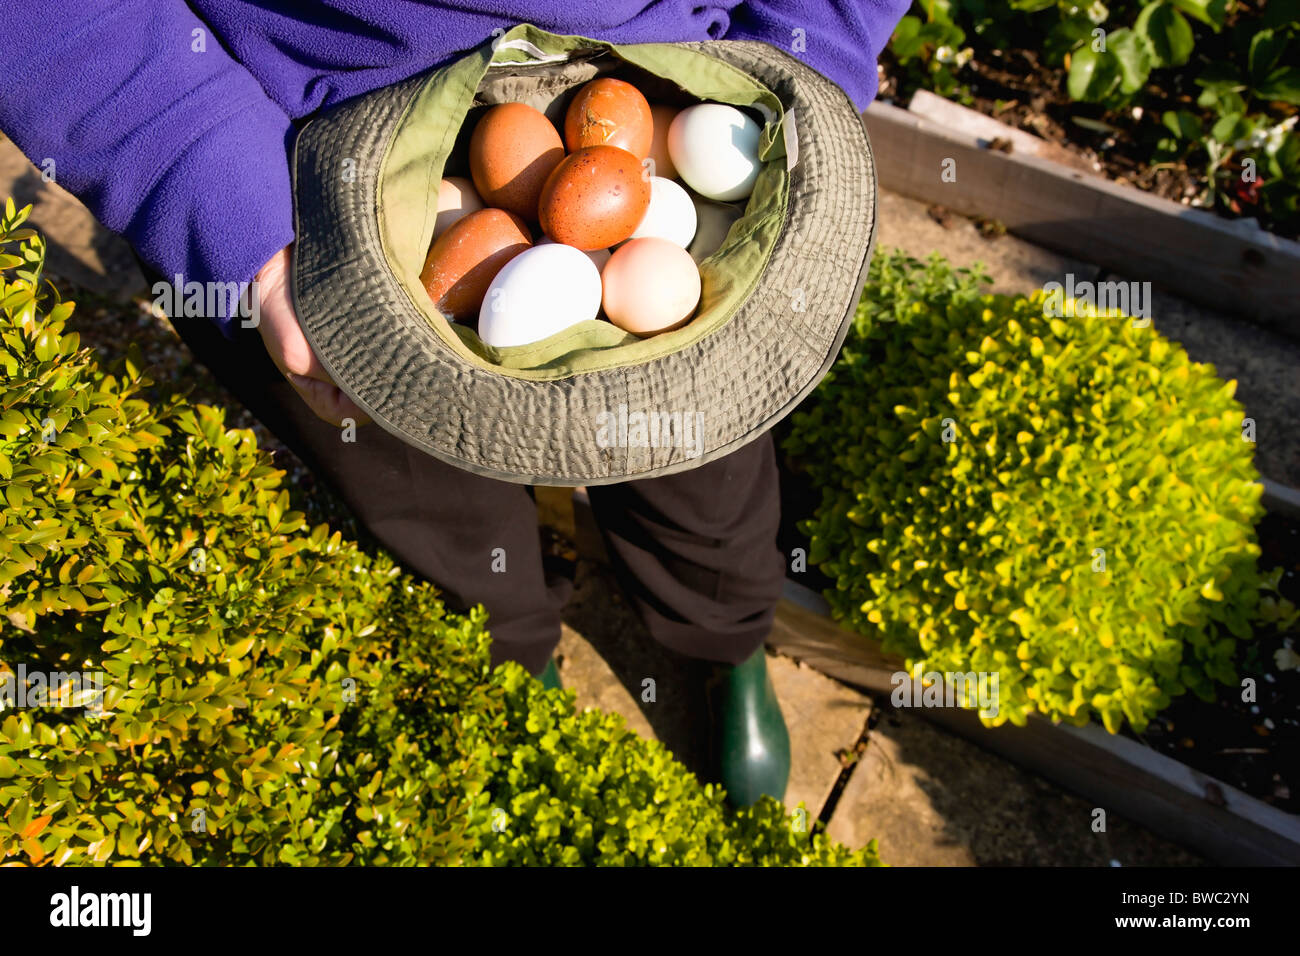 La agricultura, cría de aves de corral, pollos, Lady en su asignación sosteniendo un sombrero con una gran variedad de huevos de rango gratis Foto de stock